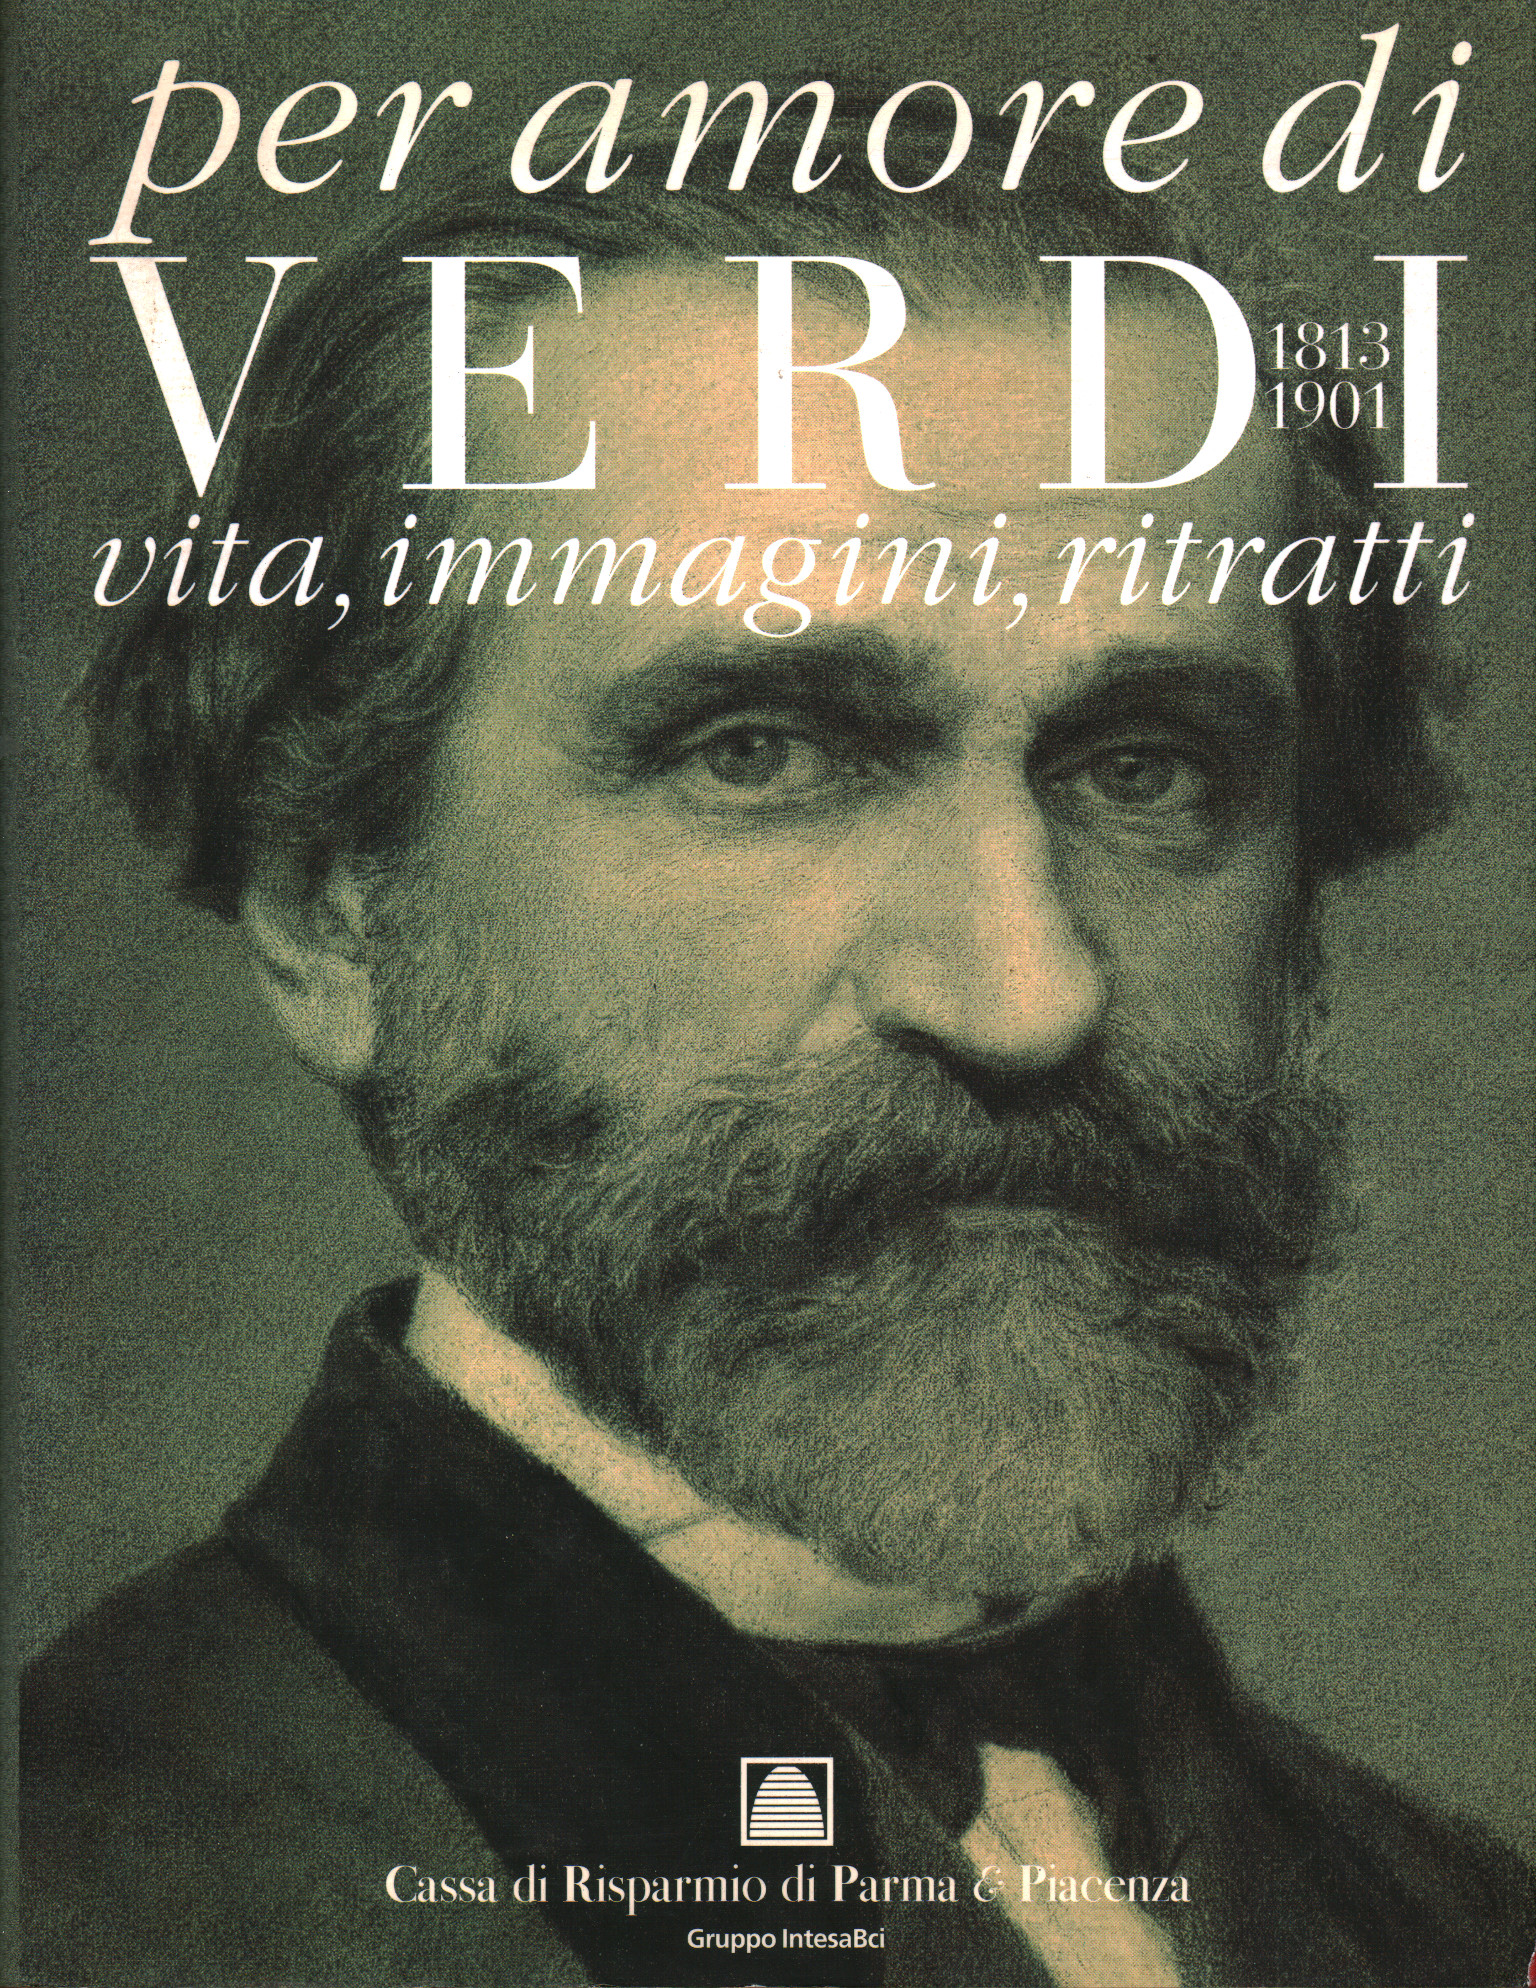 Aus Liebe zu Verdi 1813-1901, Marco Marica